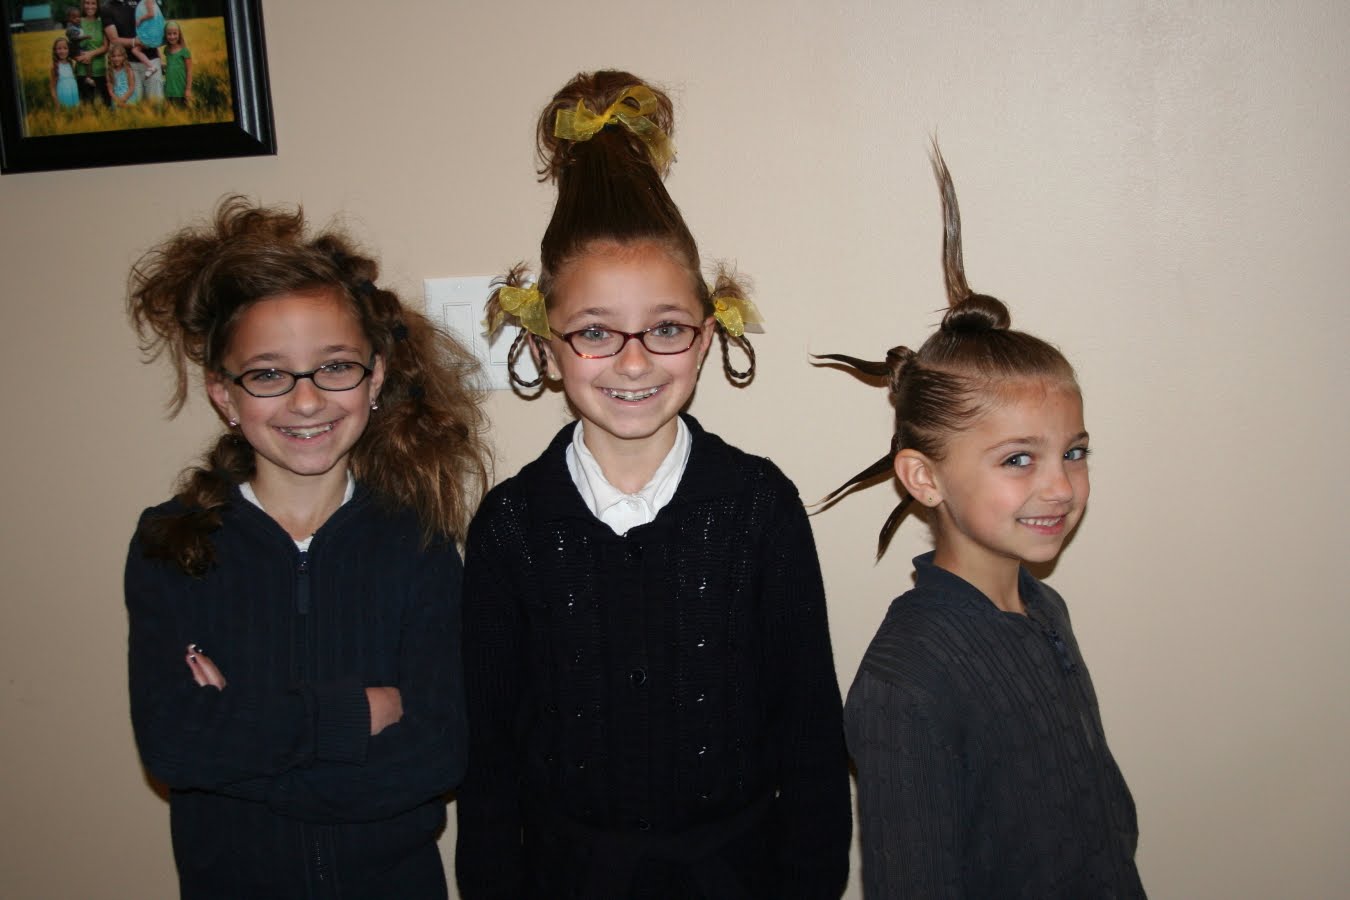 Our Crazy Hair Dayâ€¦ | Cute Girls Hairstyles